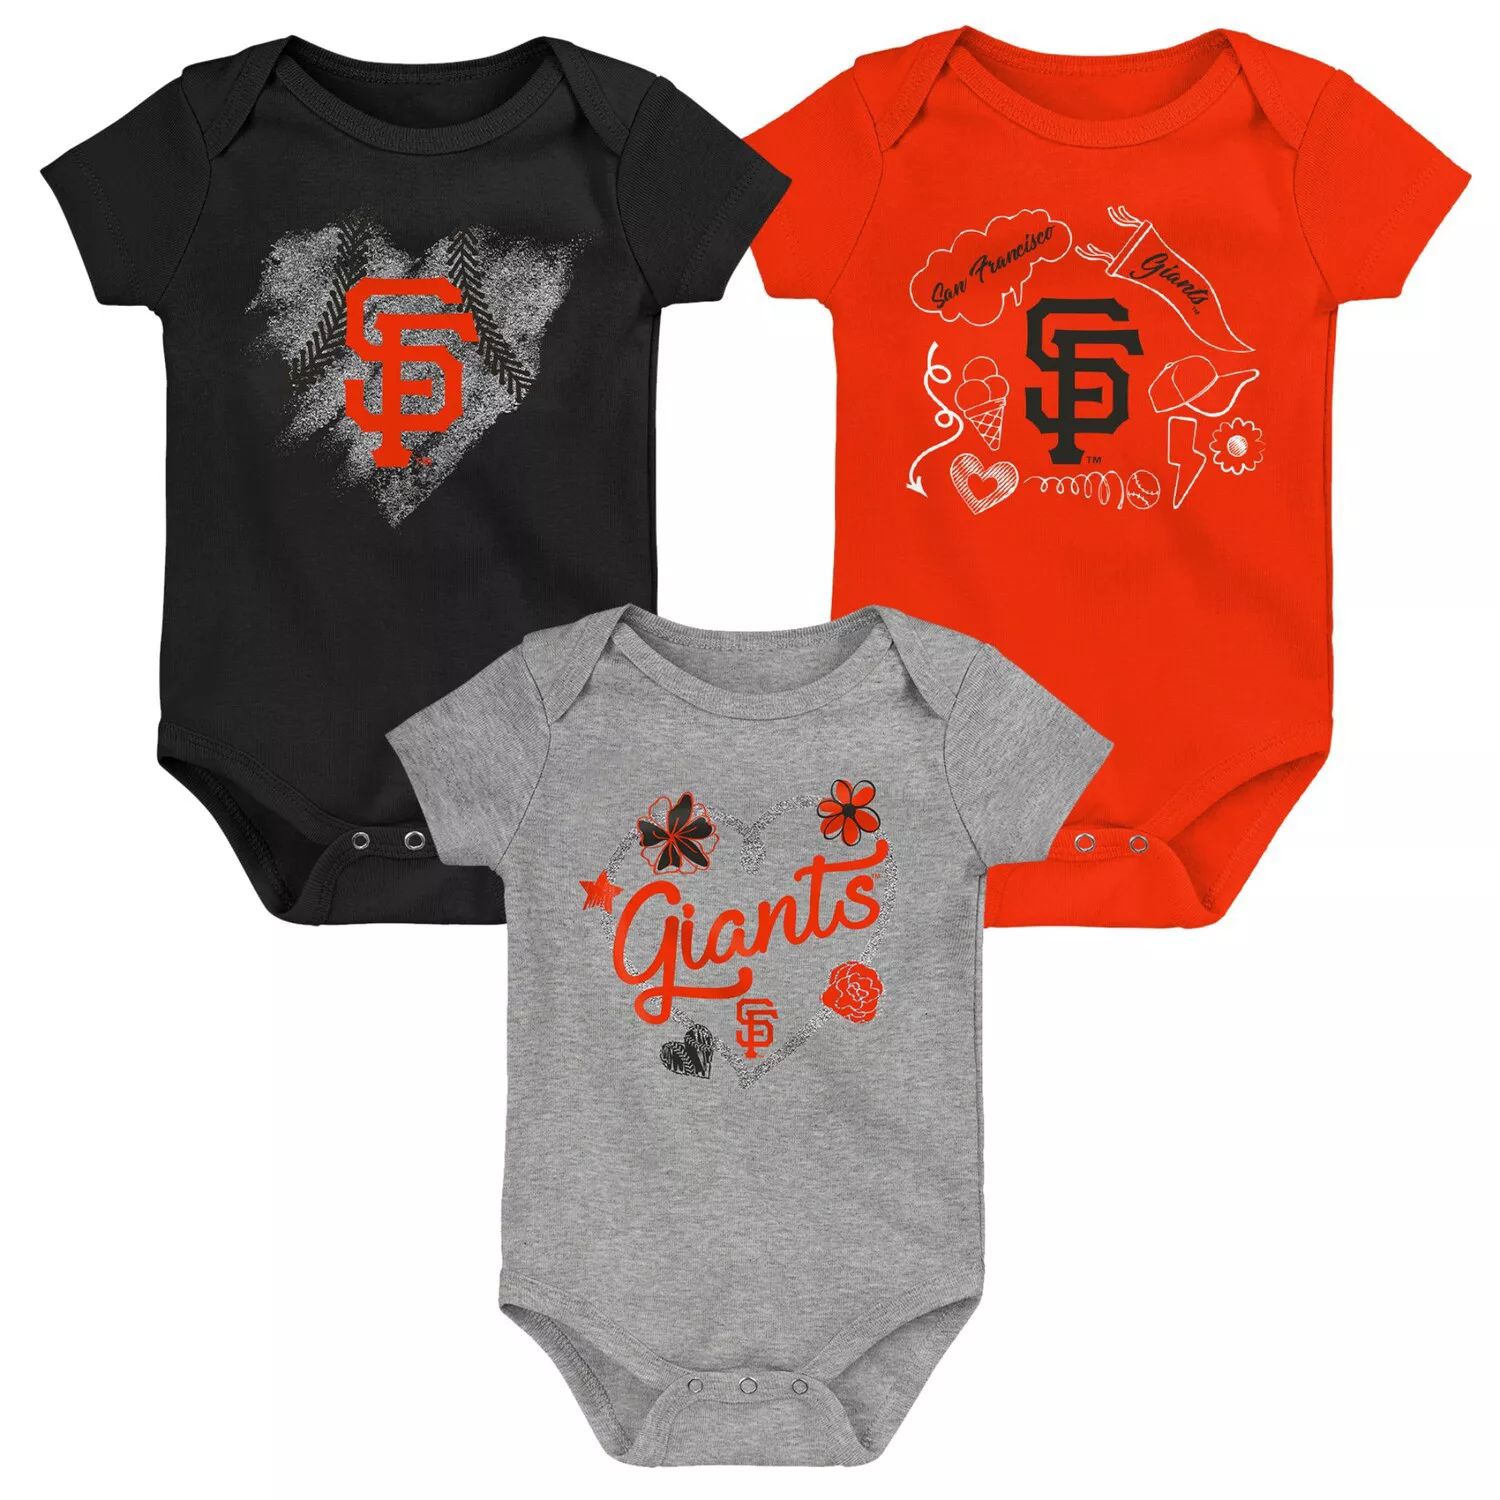 Комплект из 3 боди черного/оранжевого/серого цвета для новорожденных и младенцев San Francisco Giants Outerstuff черный боди для новорожденных san francisco giants hit and run для новорожденных outerstuff черный